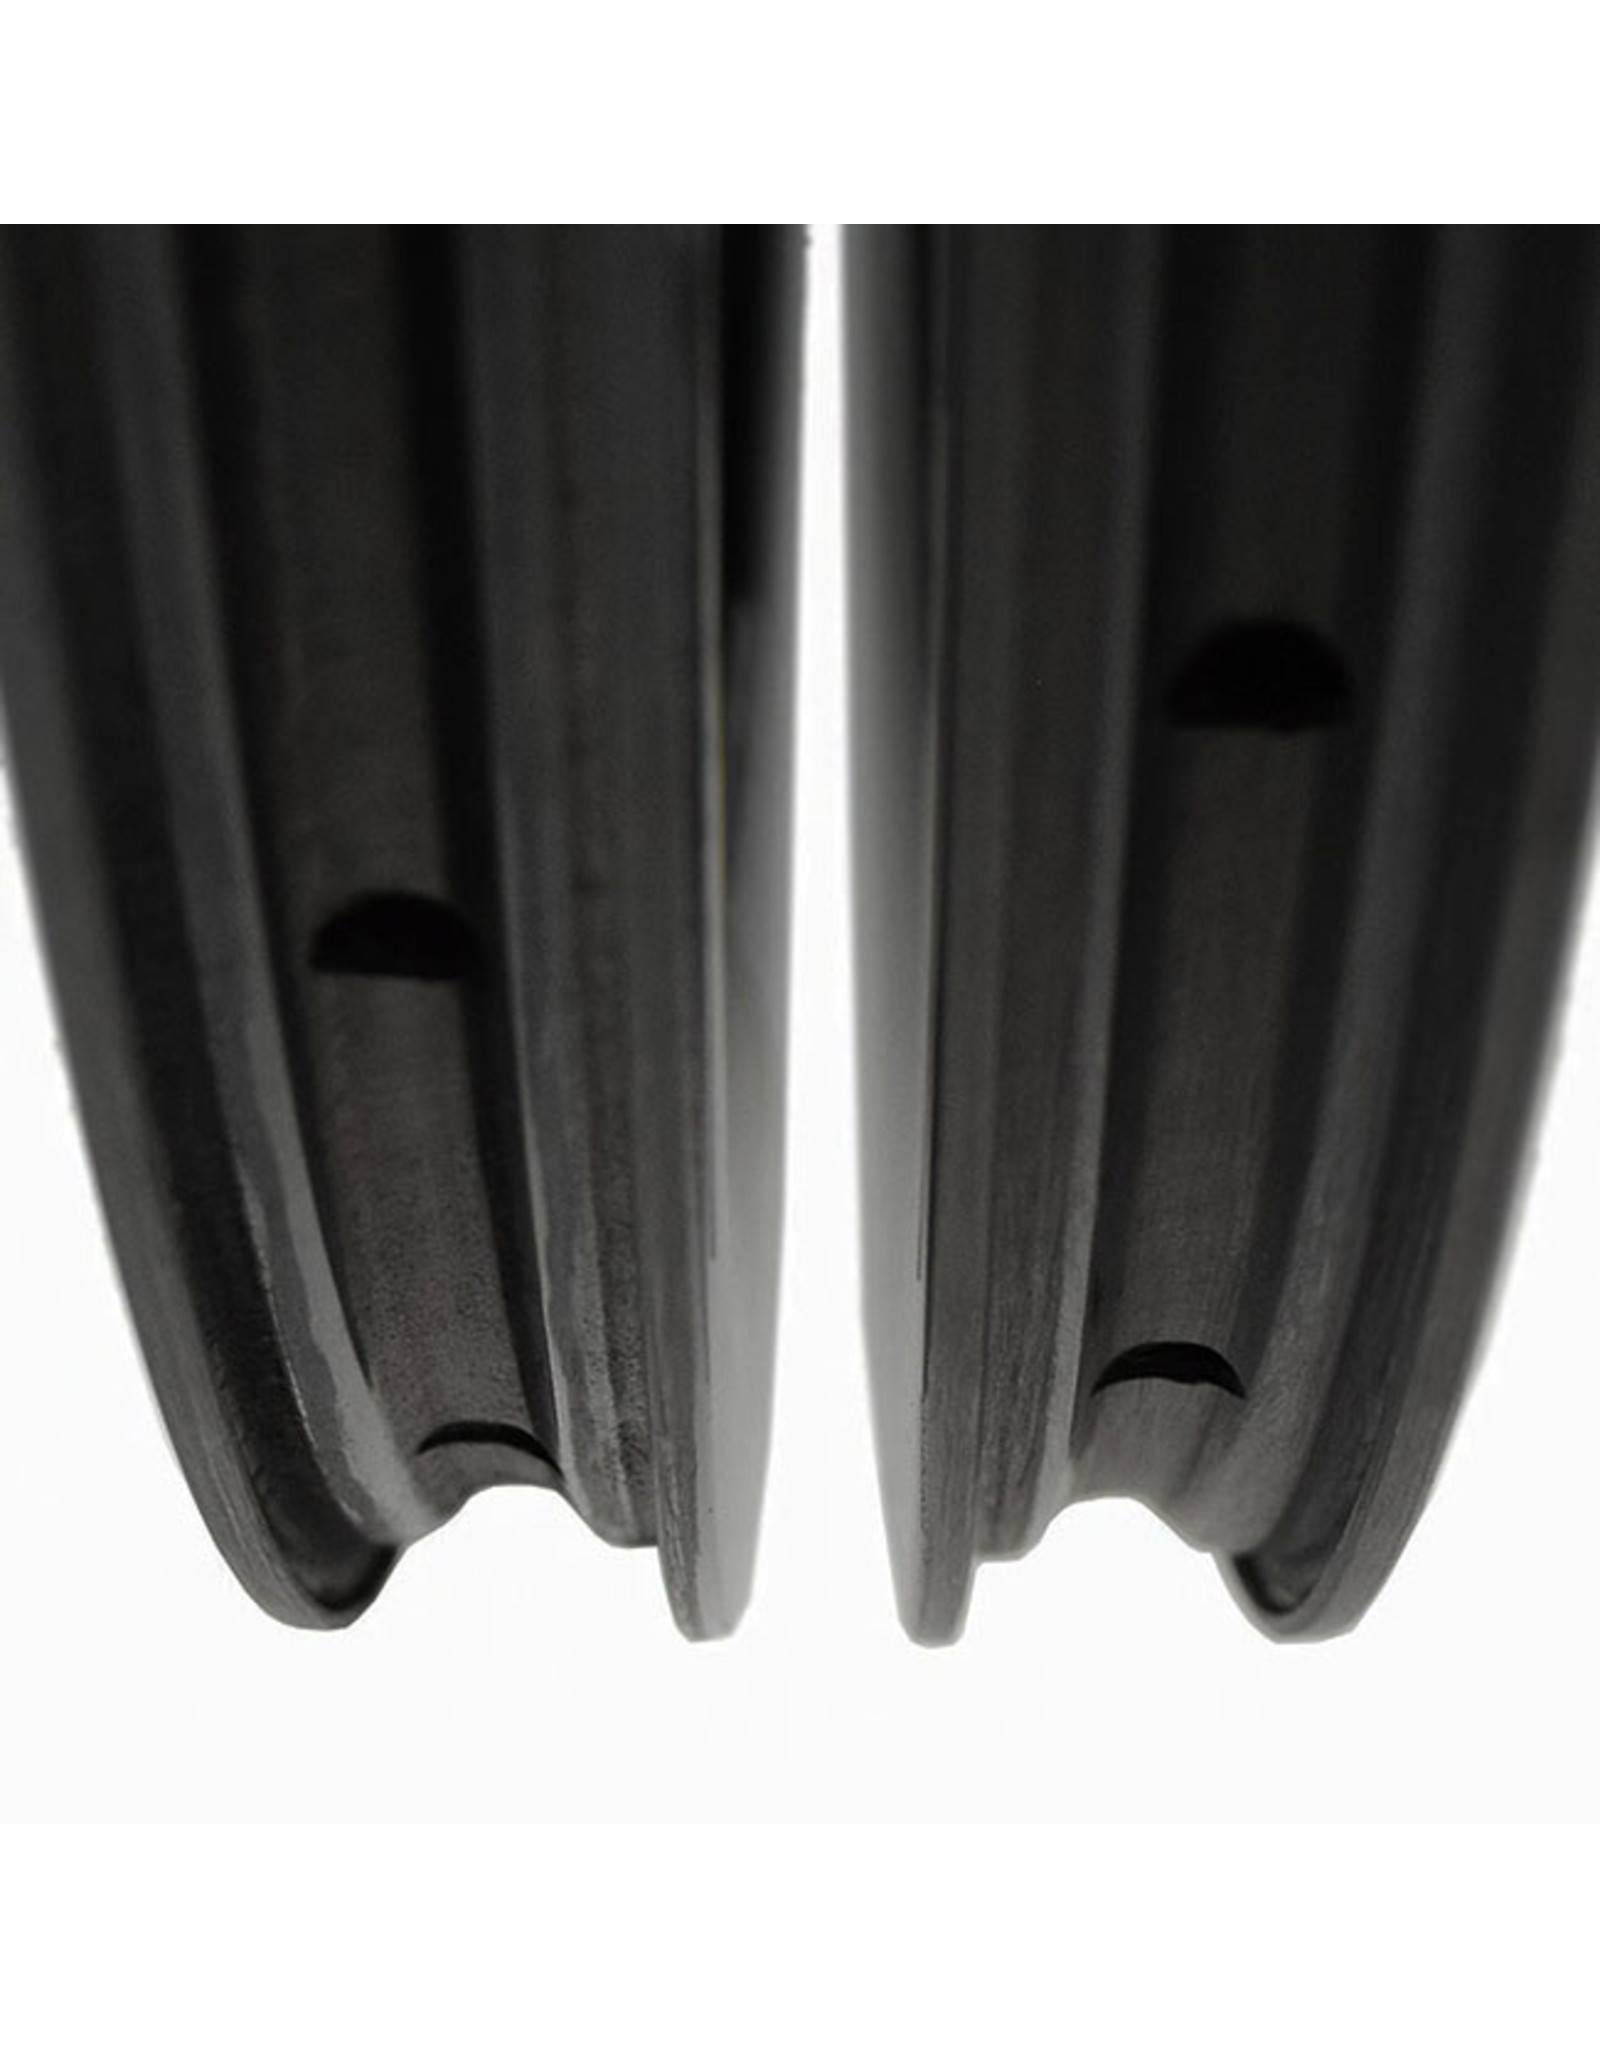 ENVE Composites ENVE 3.4 Disc Carbon Clincher Rim